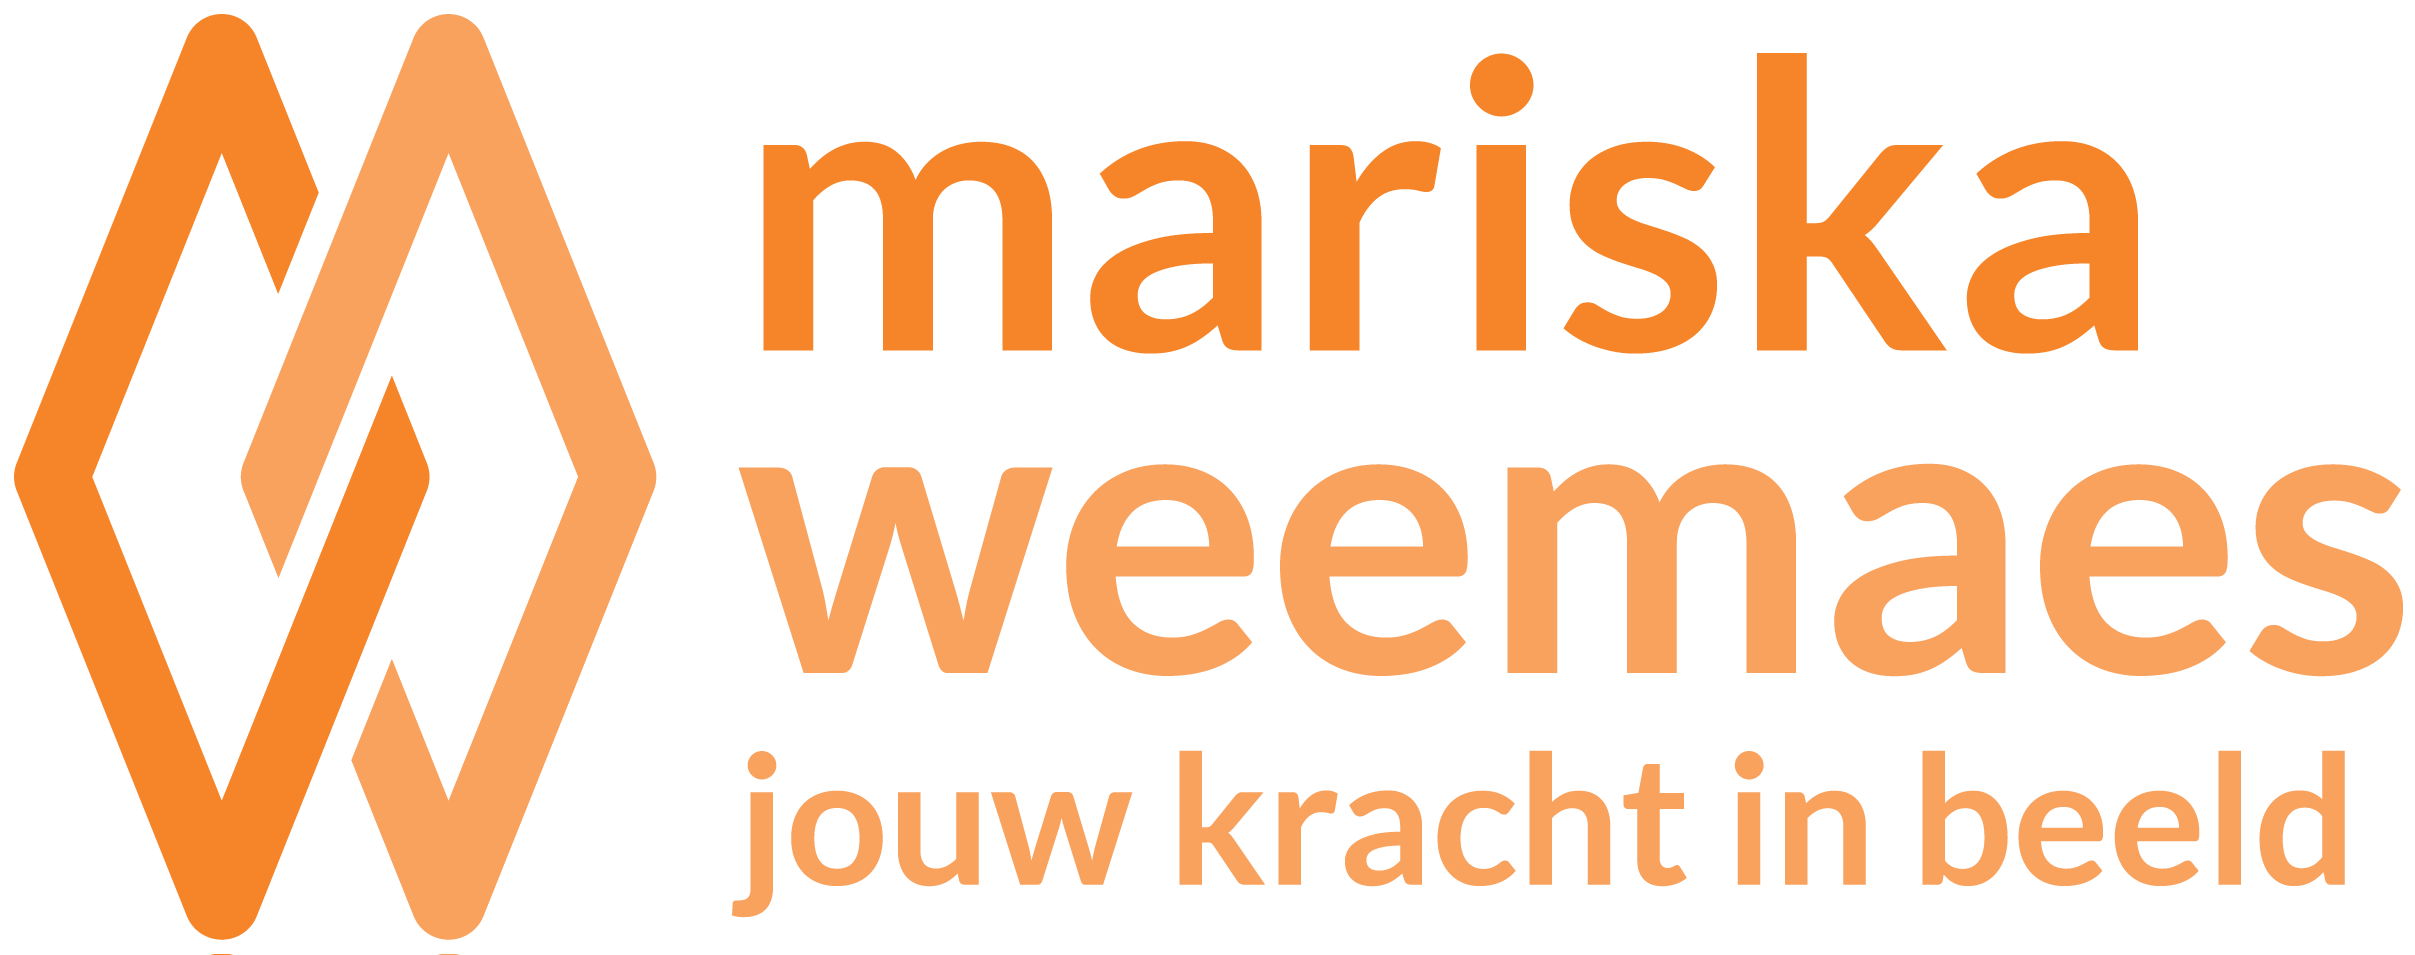 Mariska Weemaes logo